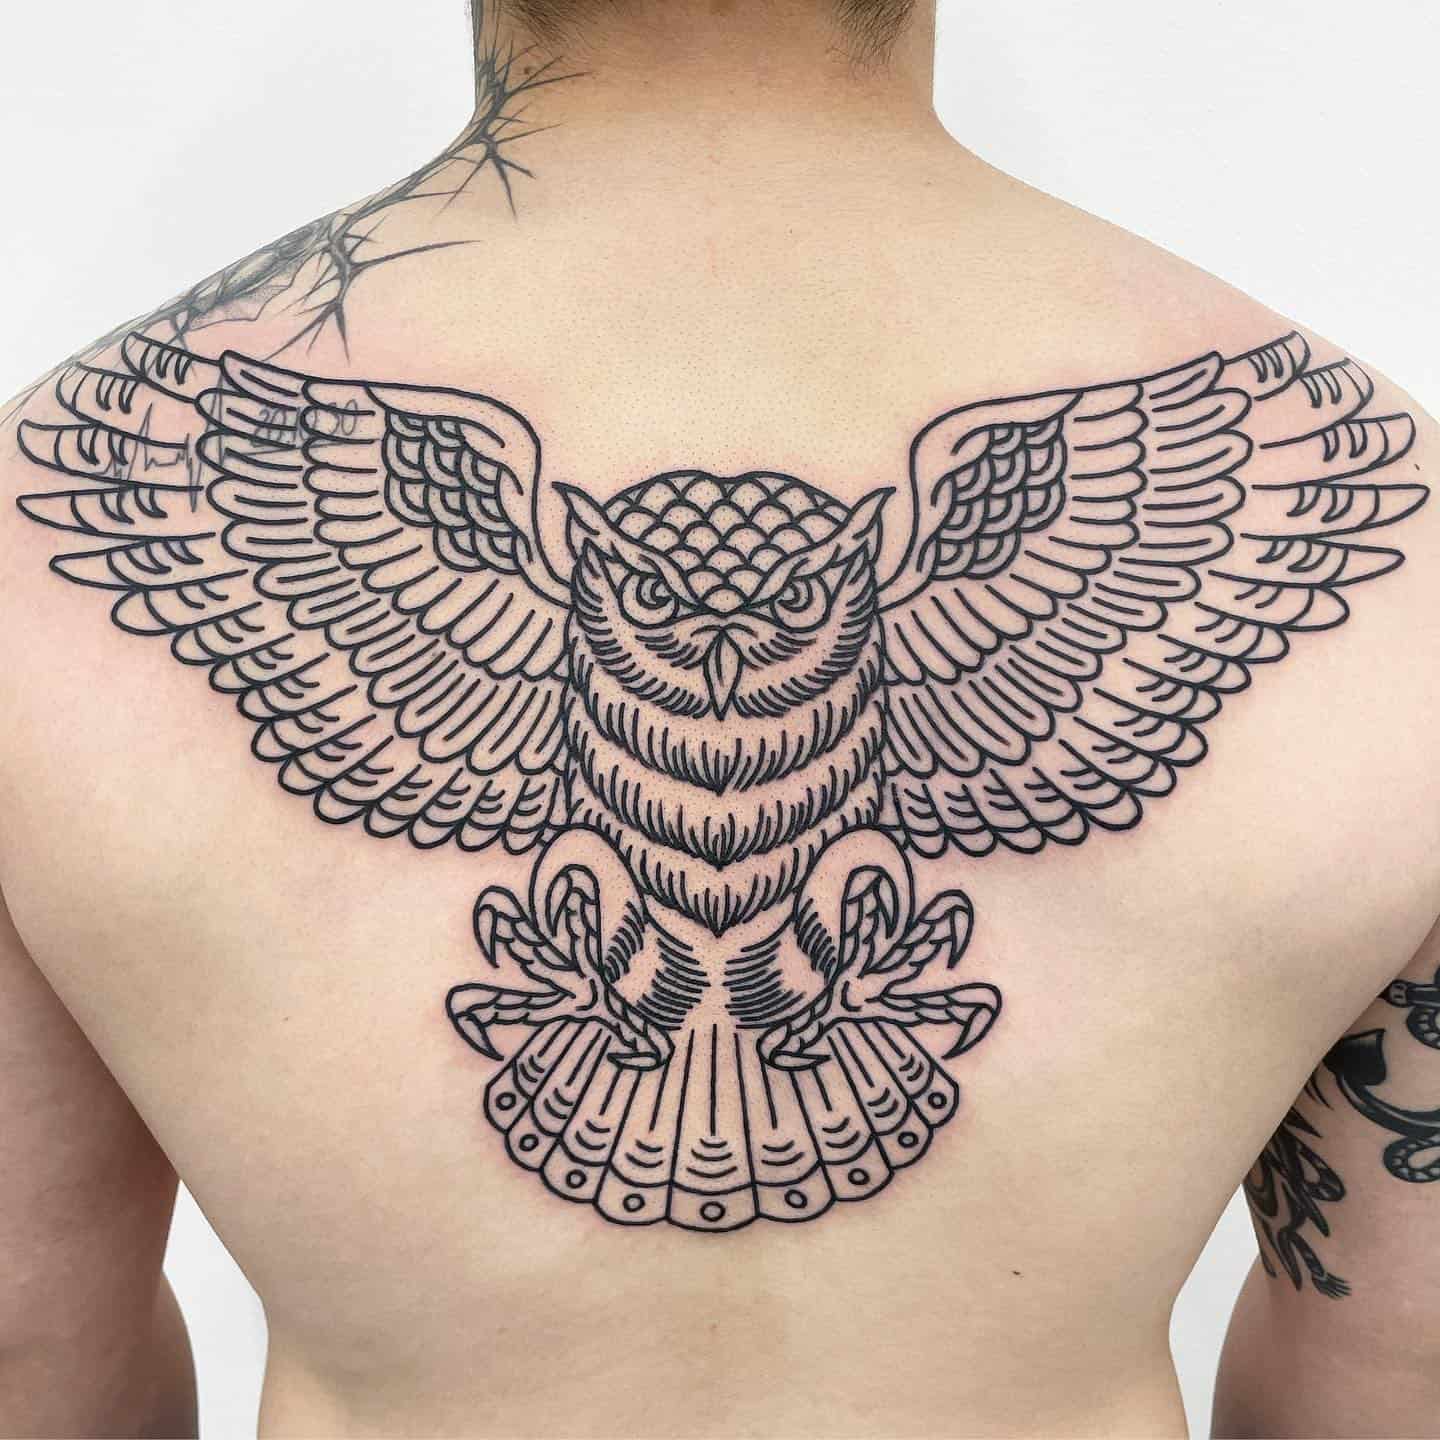 Owl tattoo by mamba tattooer